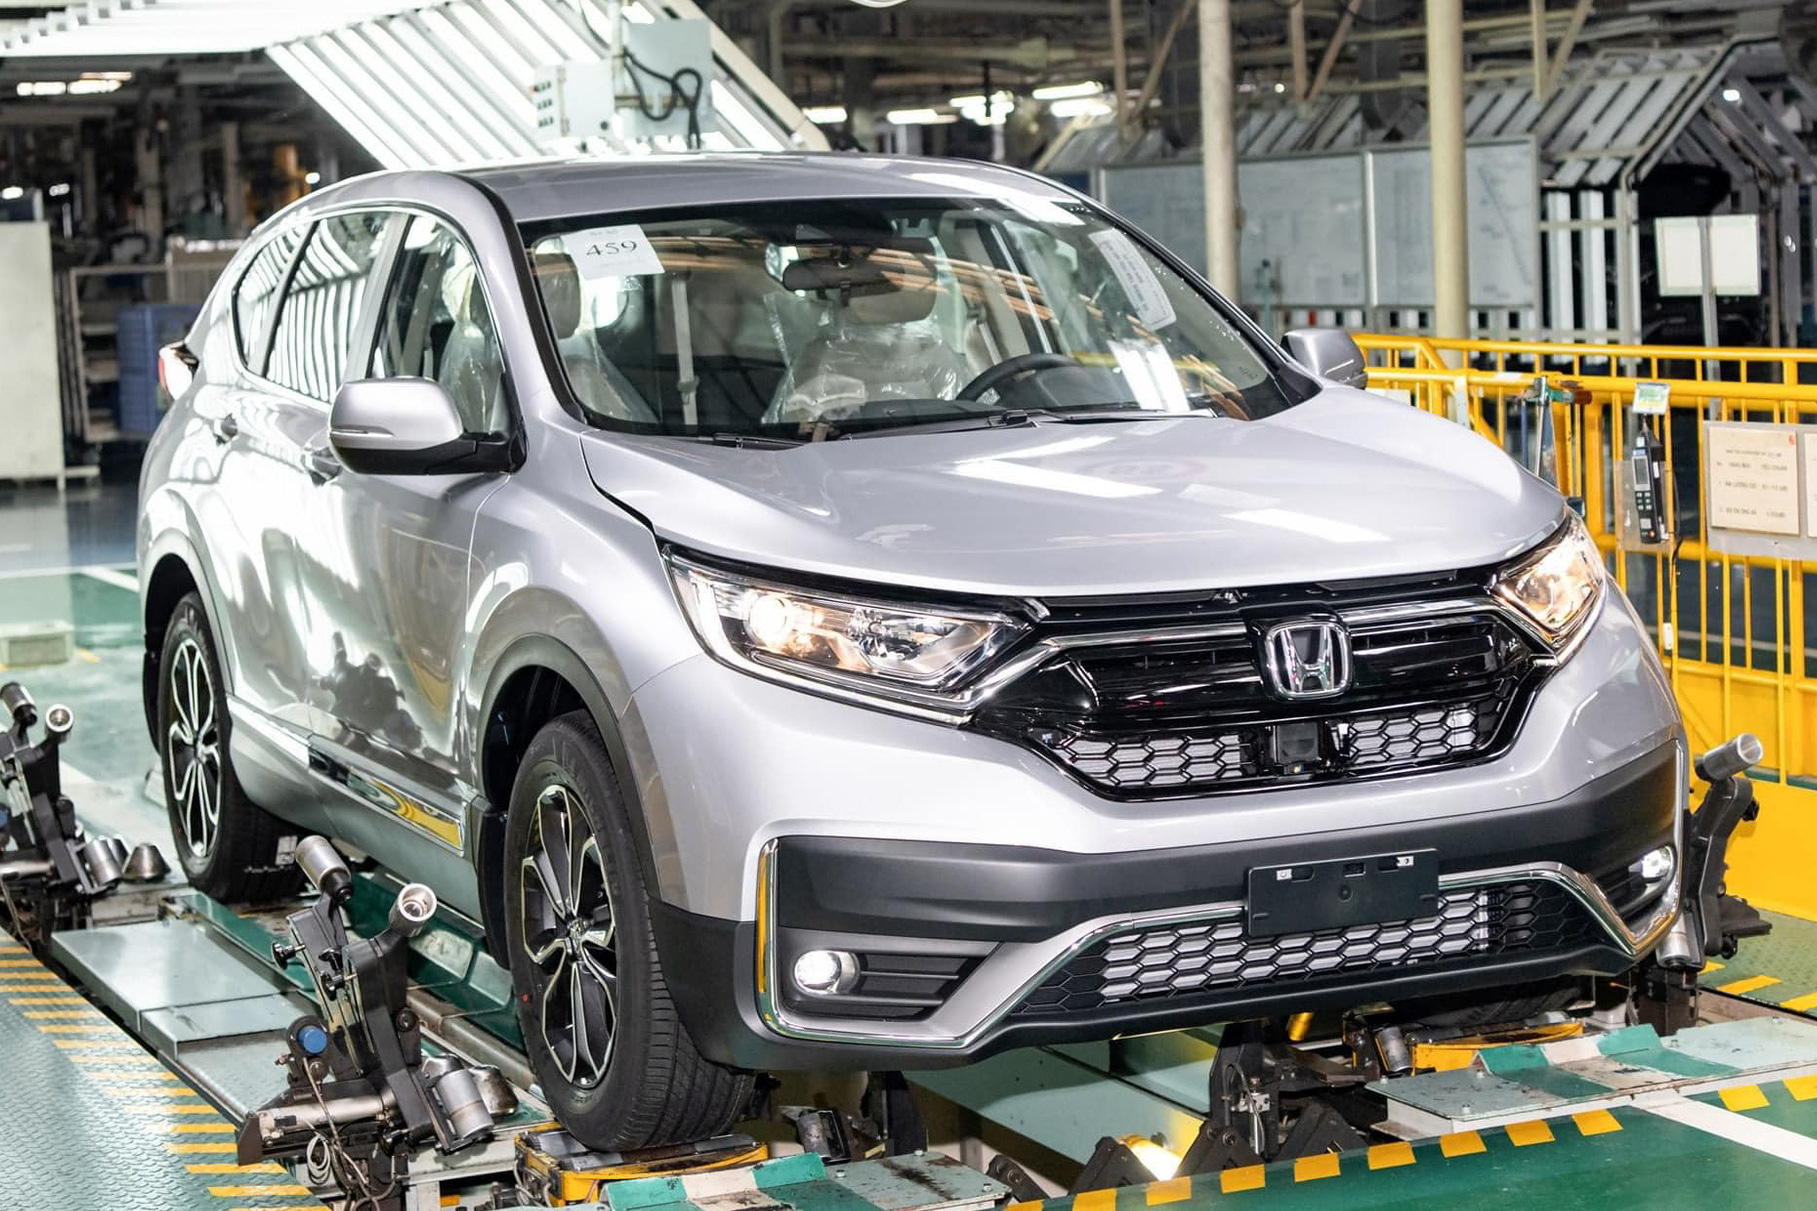 Đại lý báo giá dự kiến Honda CR-V 2020: Từ 1,009 tỷ đồng, tăng gần 30 triệu đồng so với đời cũ